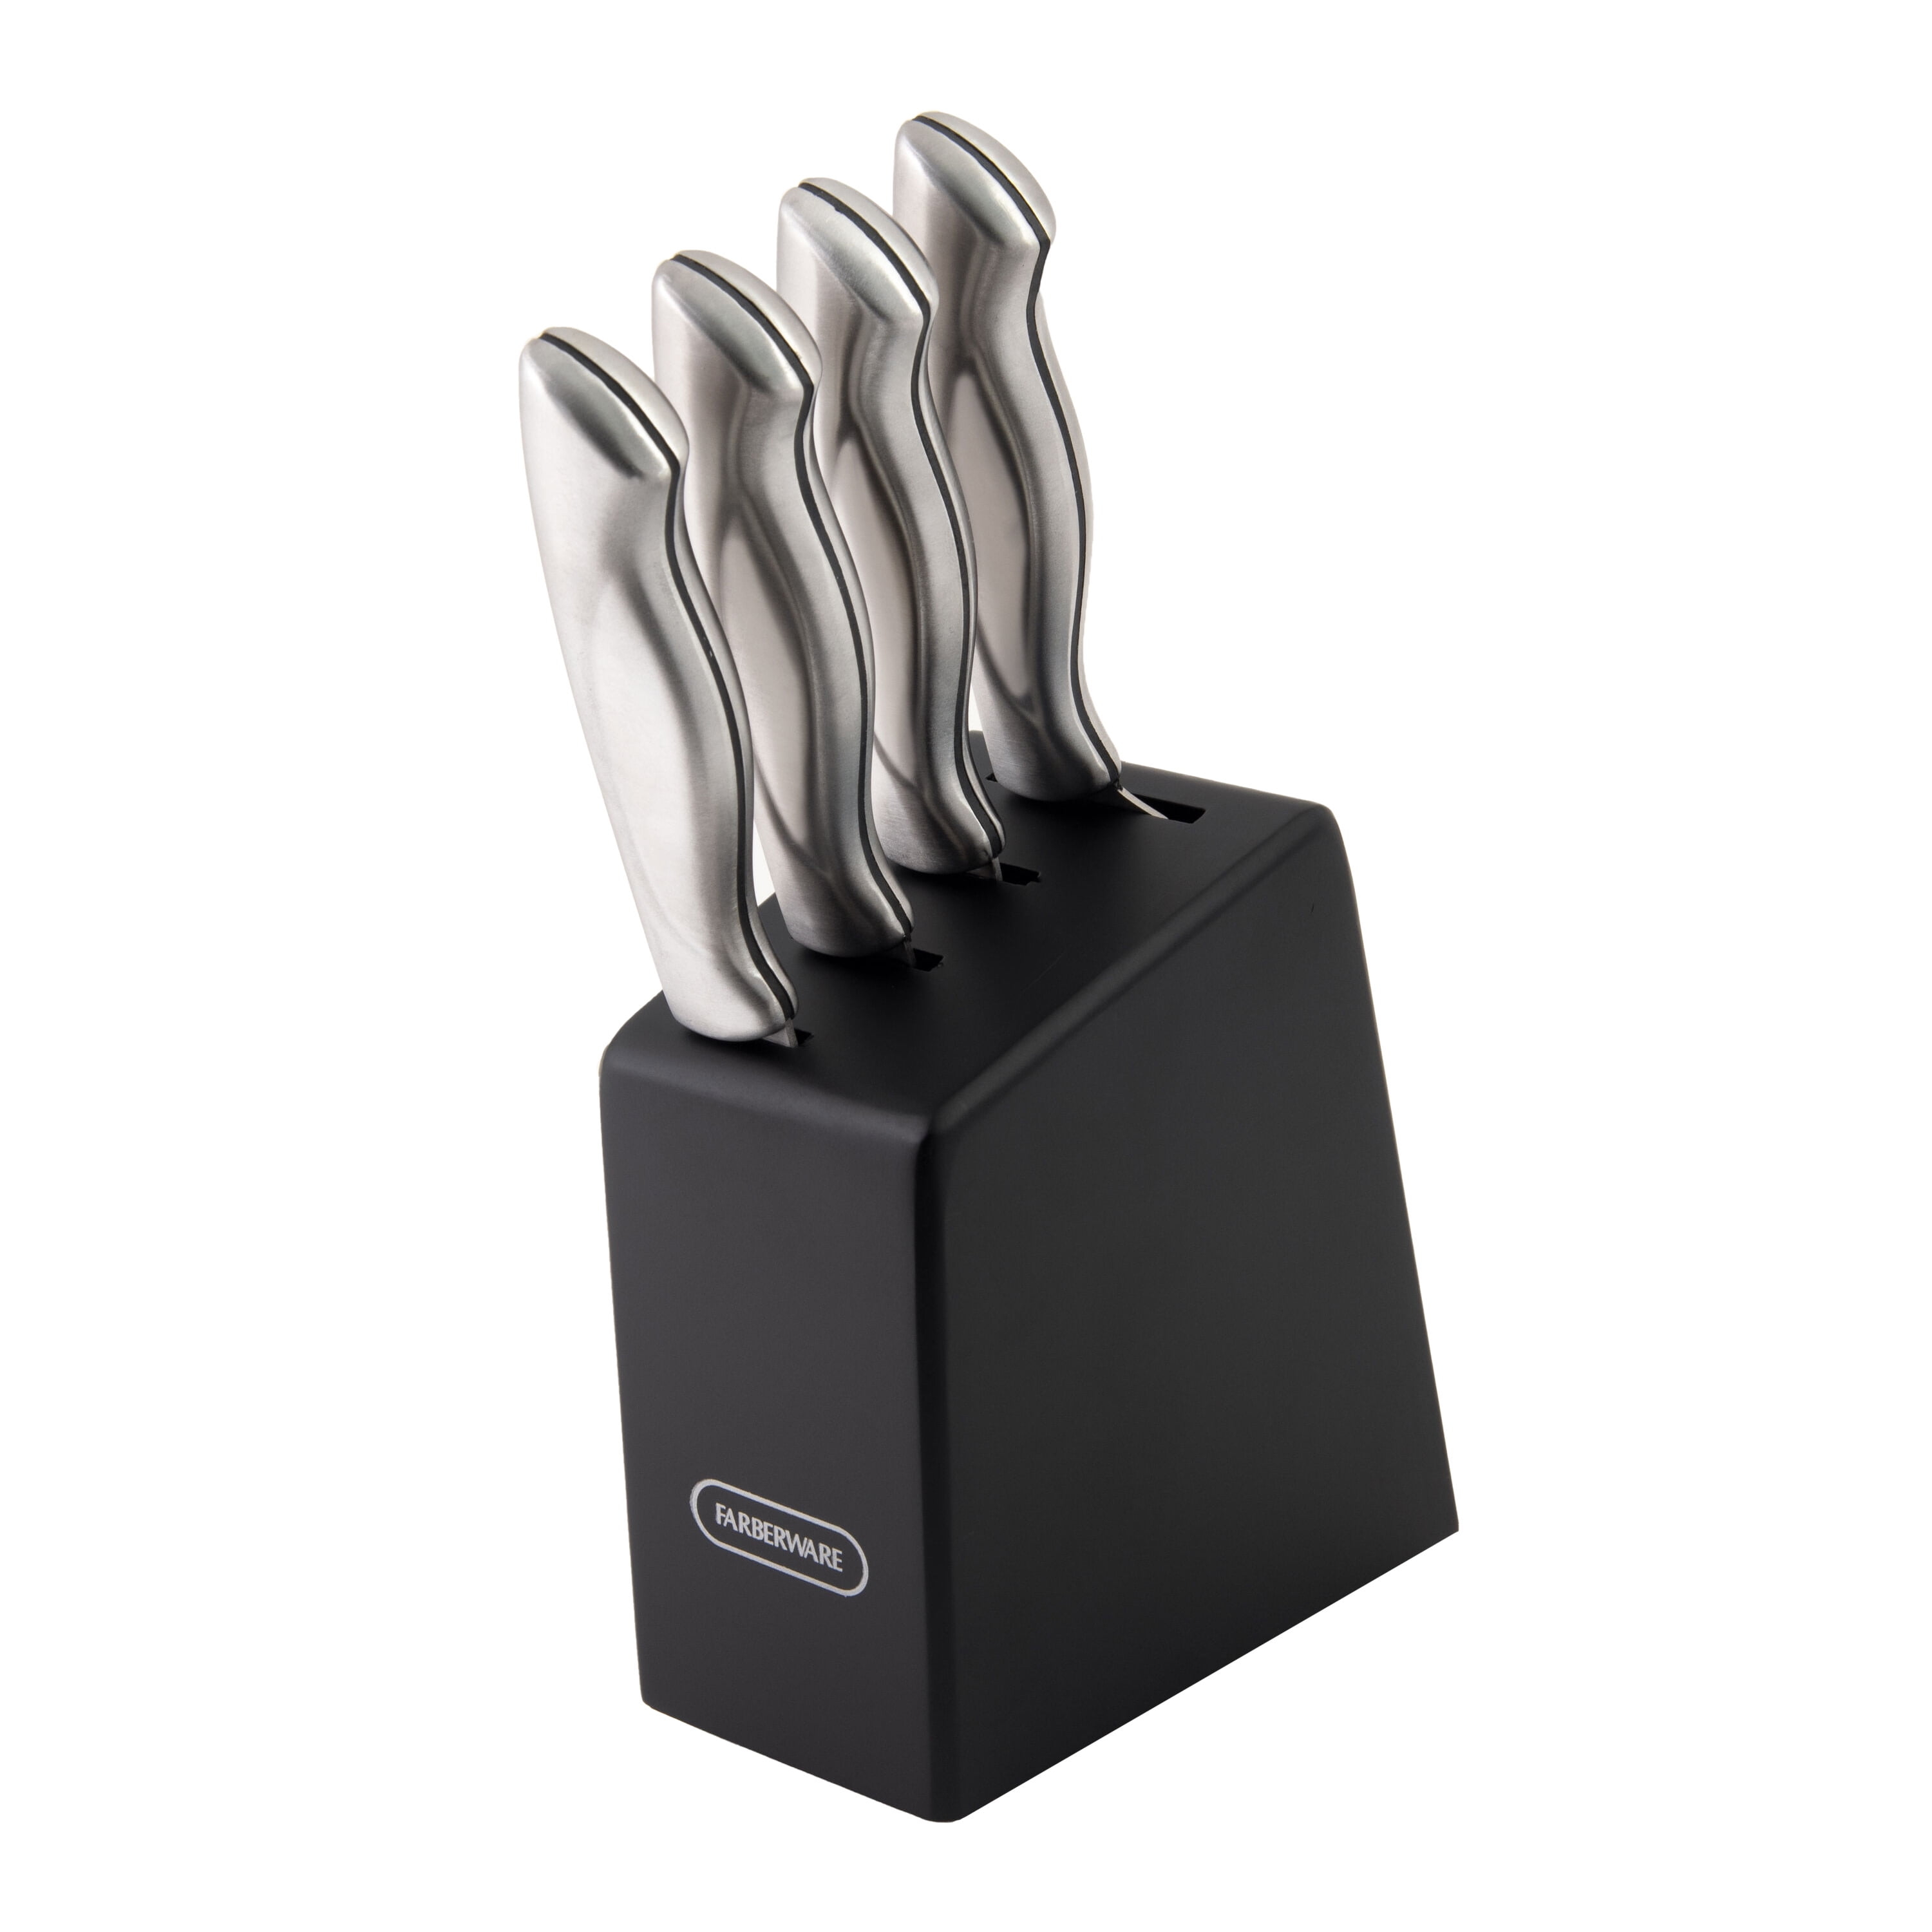 Farberware 5-piece Stamped Stainless Steel Prep Knife Block Set, Black 